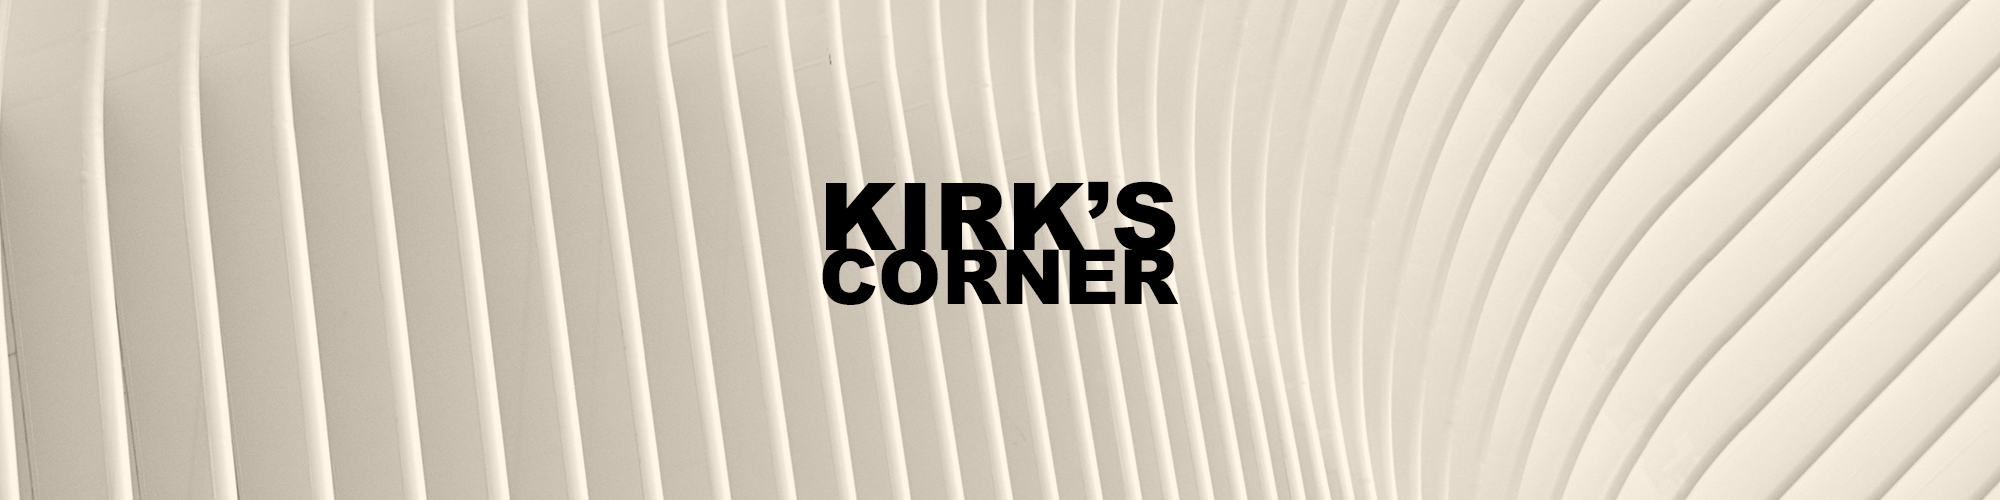 Kirk's Corner 003: 'Of A Simple Man' Album Review